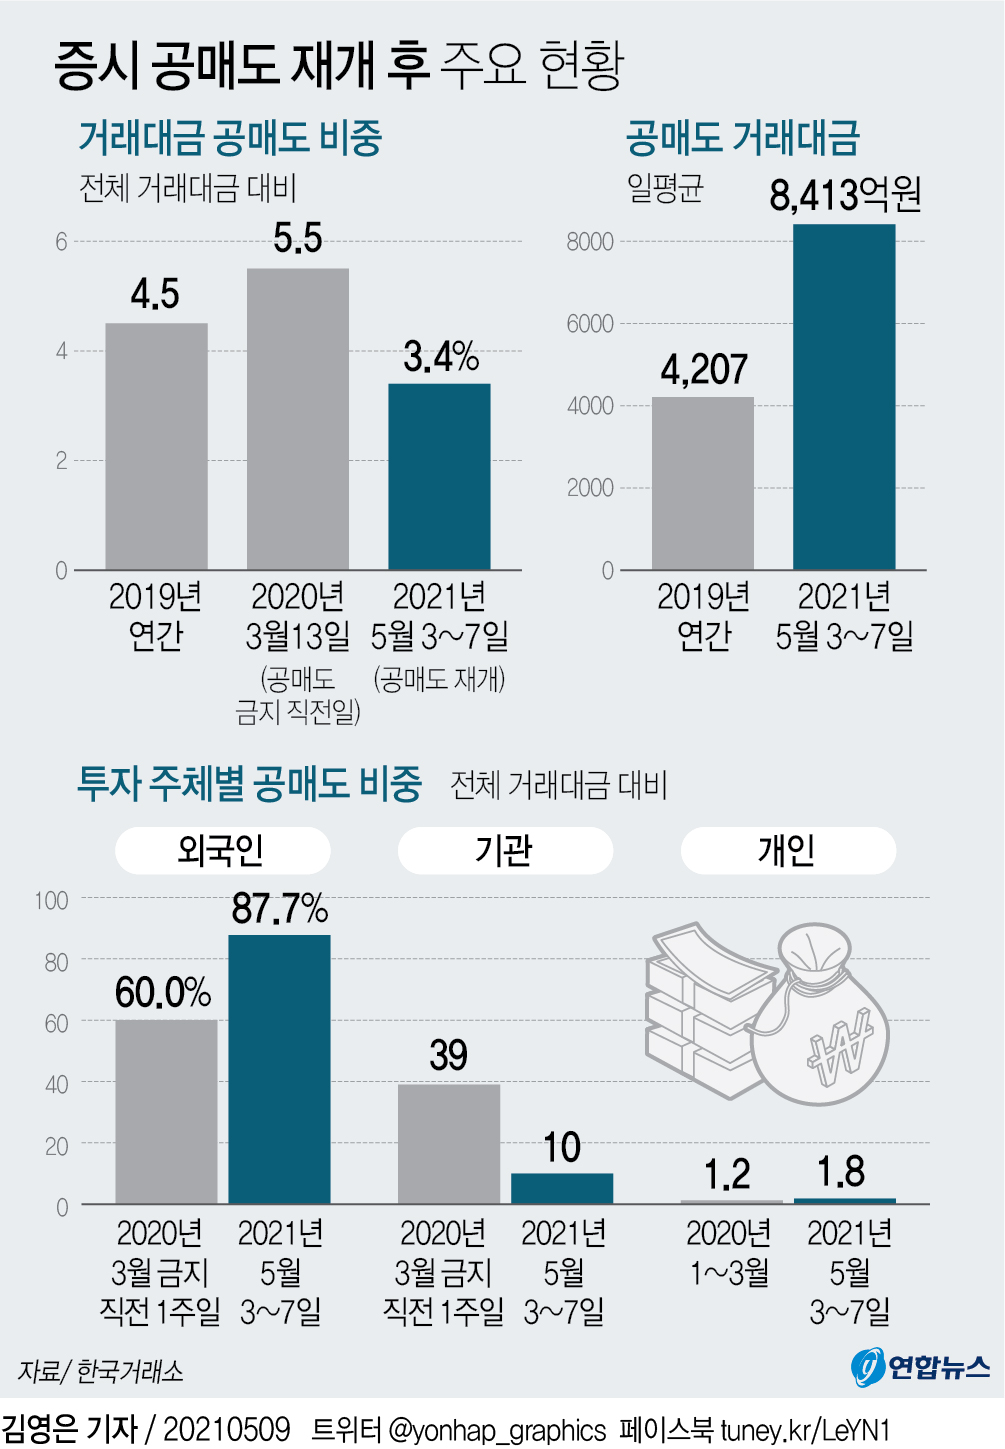 [그래픽] 증시 공매도 재개 후 주요 현황